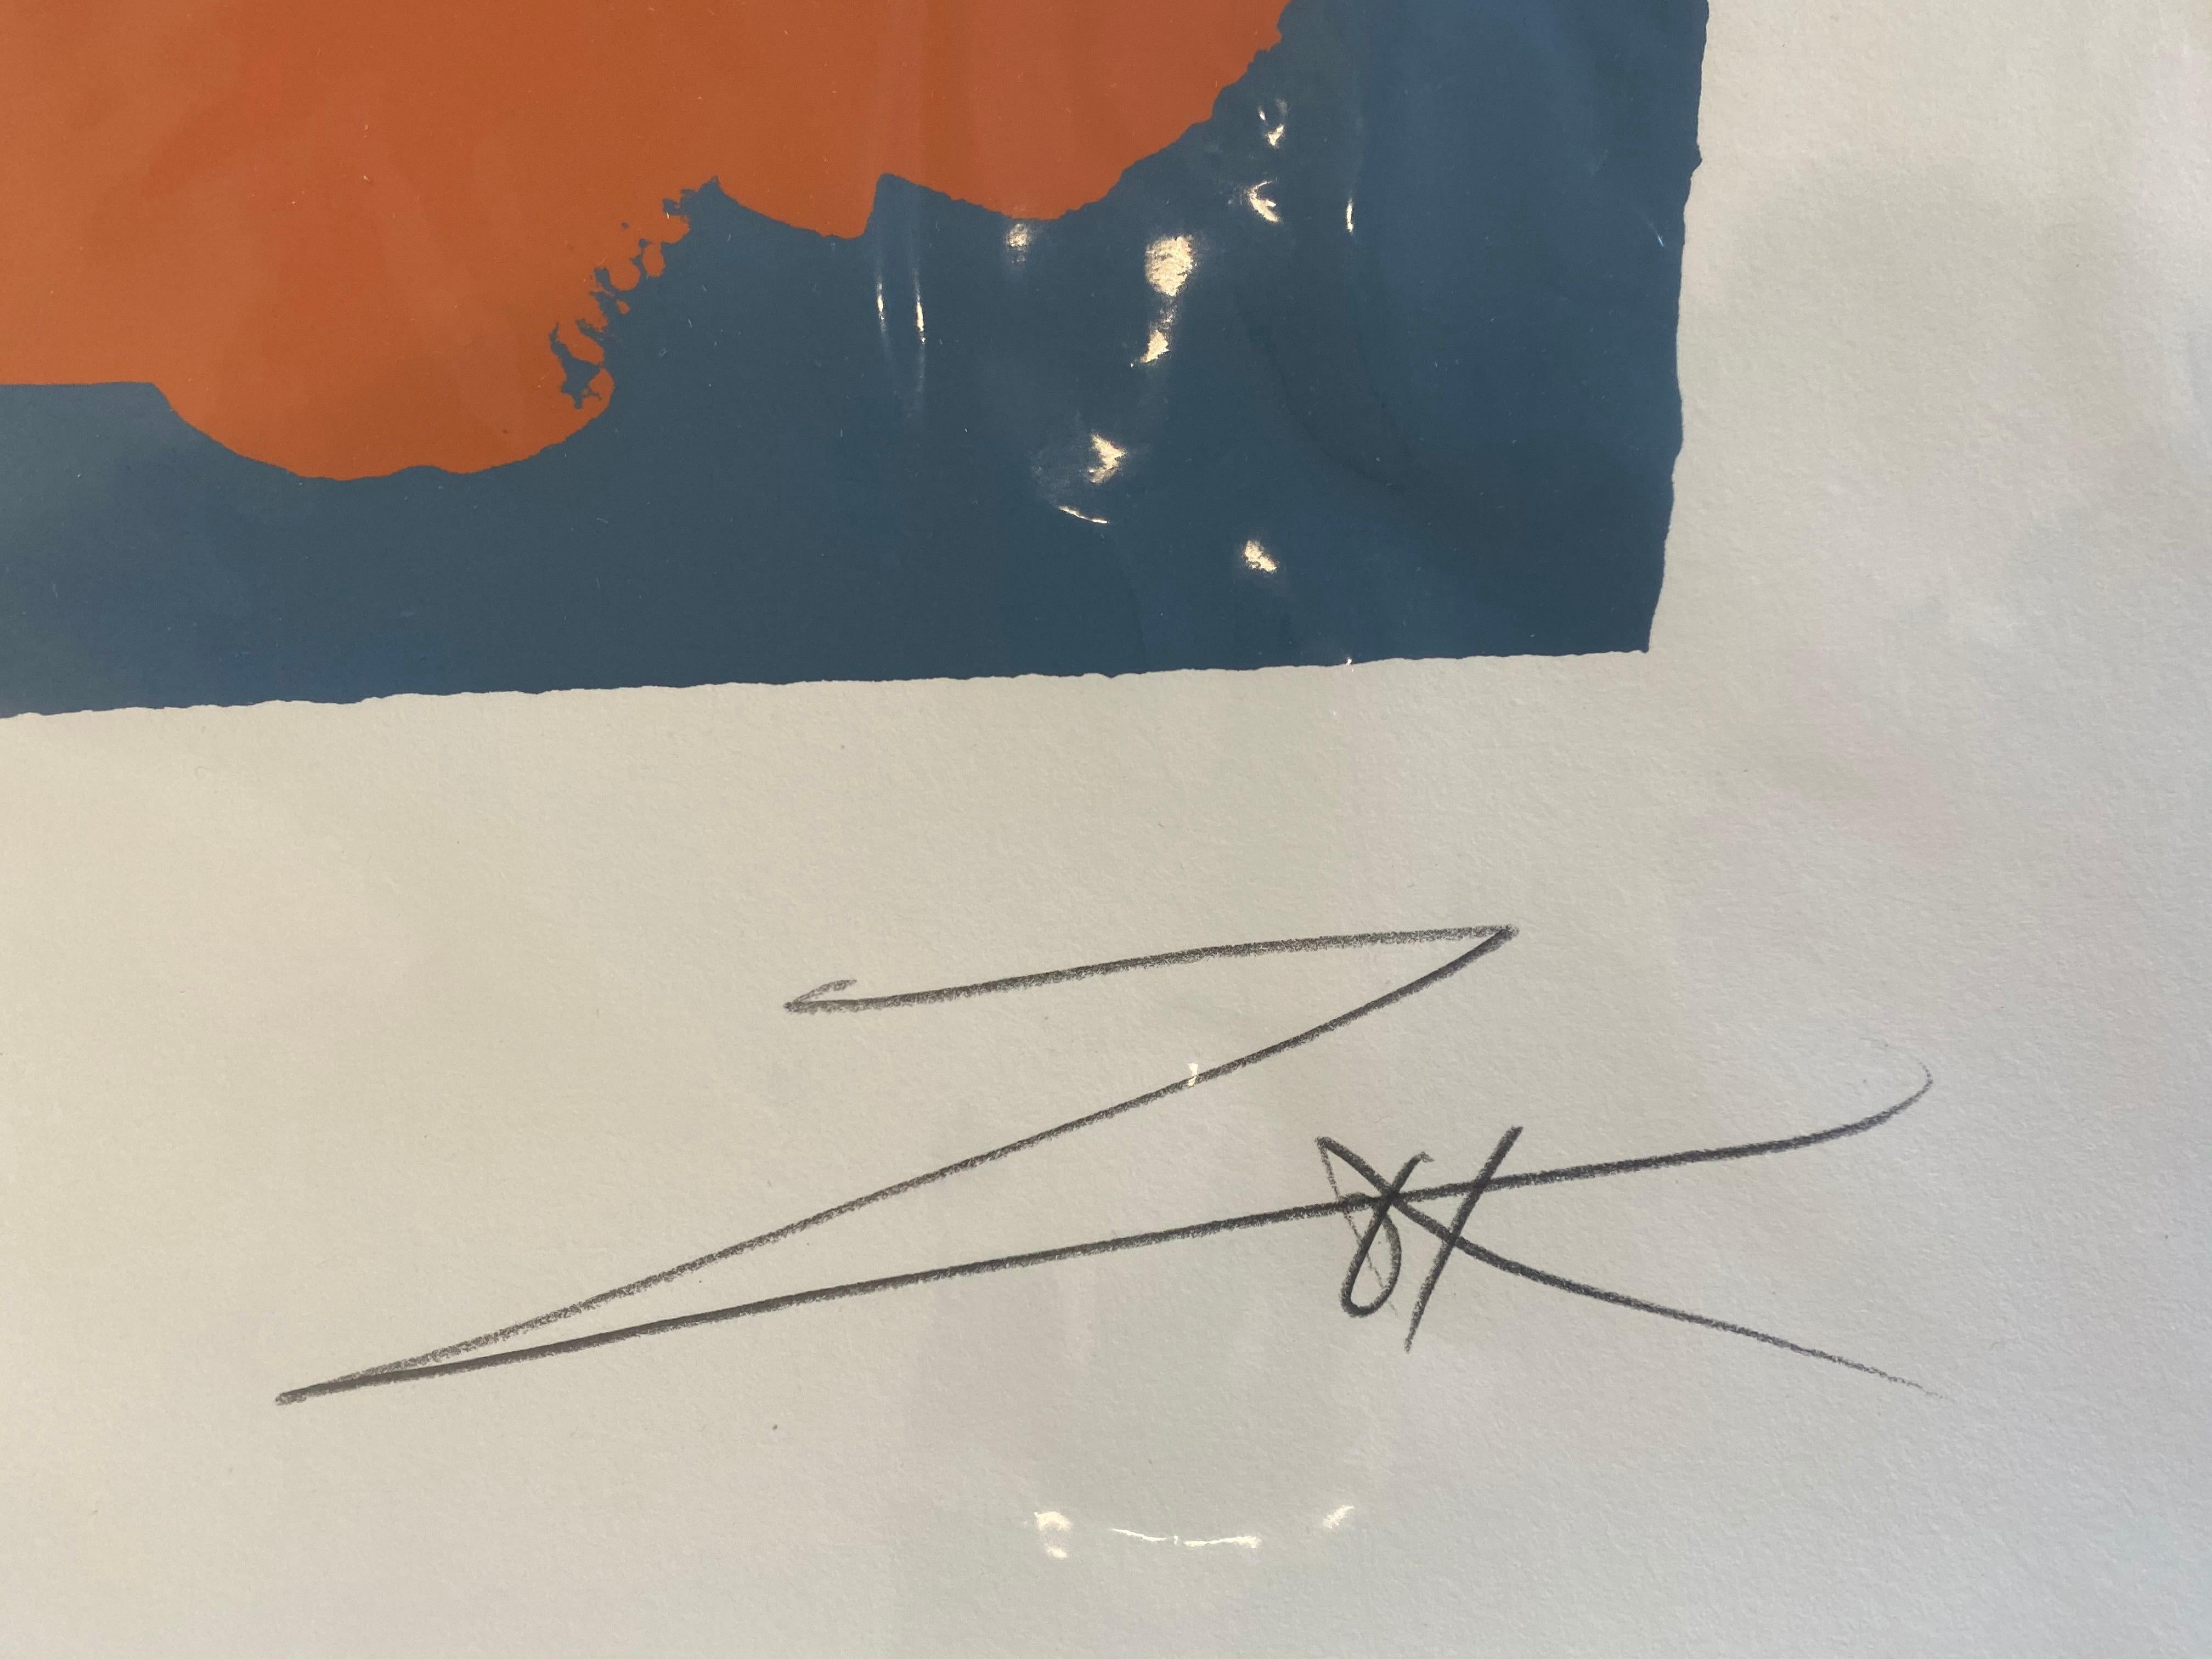 Grande sérigraphie abstraite dramatique en édition limitée aux couleurs orange et bleu audacieuses, signée et numérotée par l'artiste. L'impression est montée sur flotteur dans un cadre en bois peint en blanc sous plexiglas UV. Les dimensions du